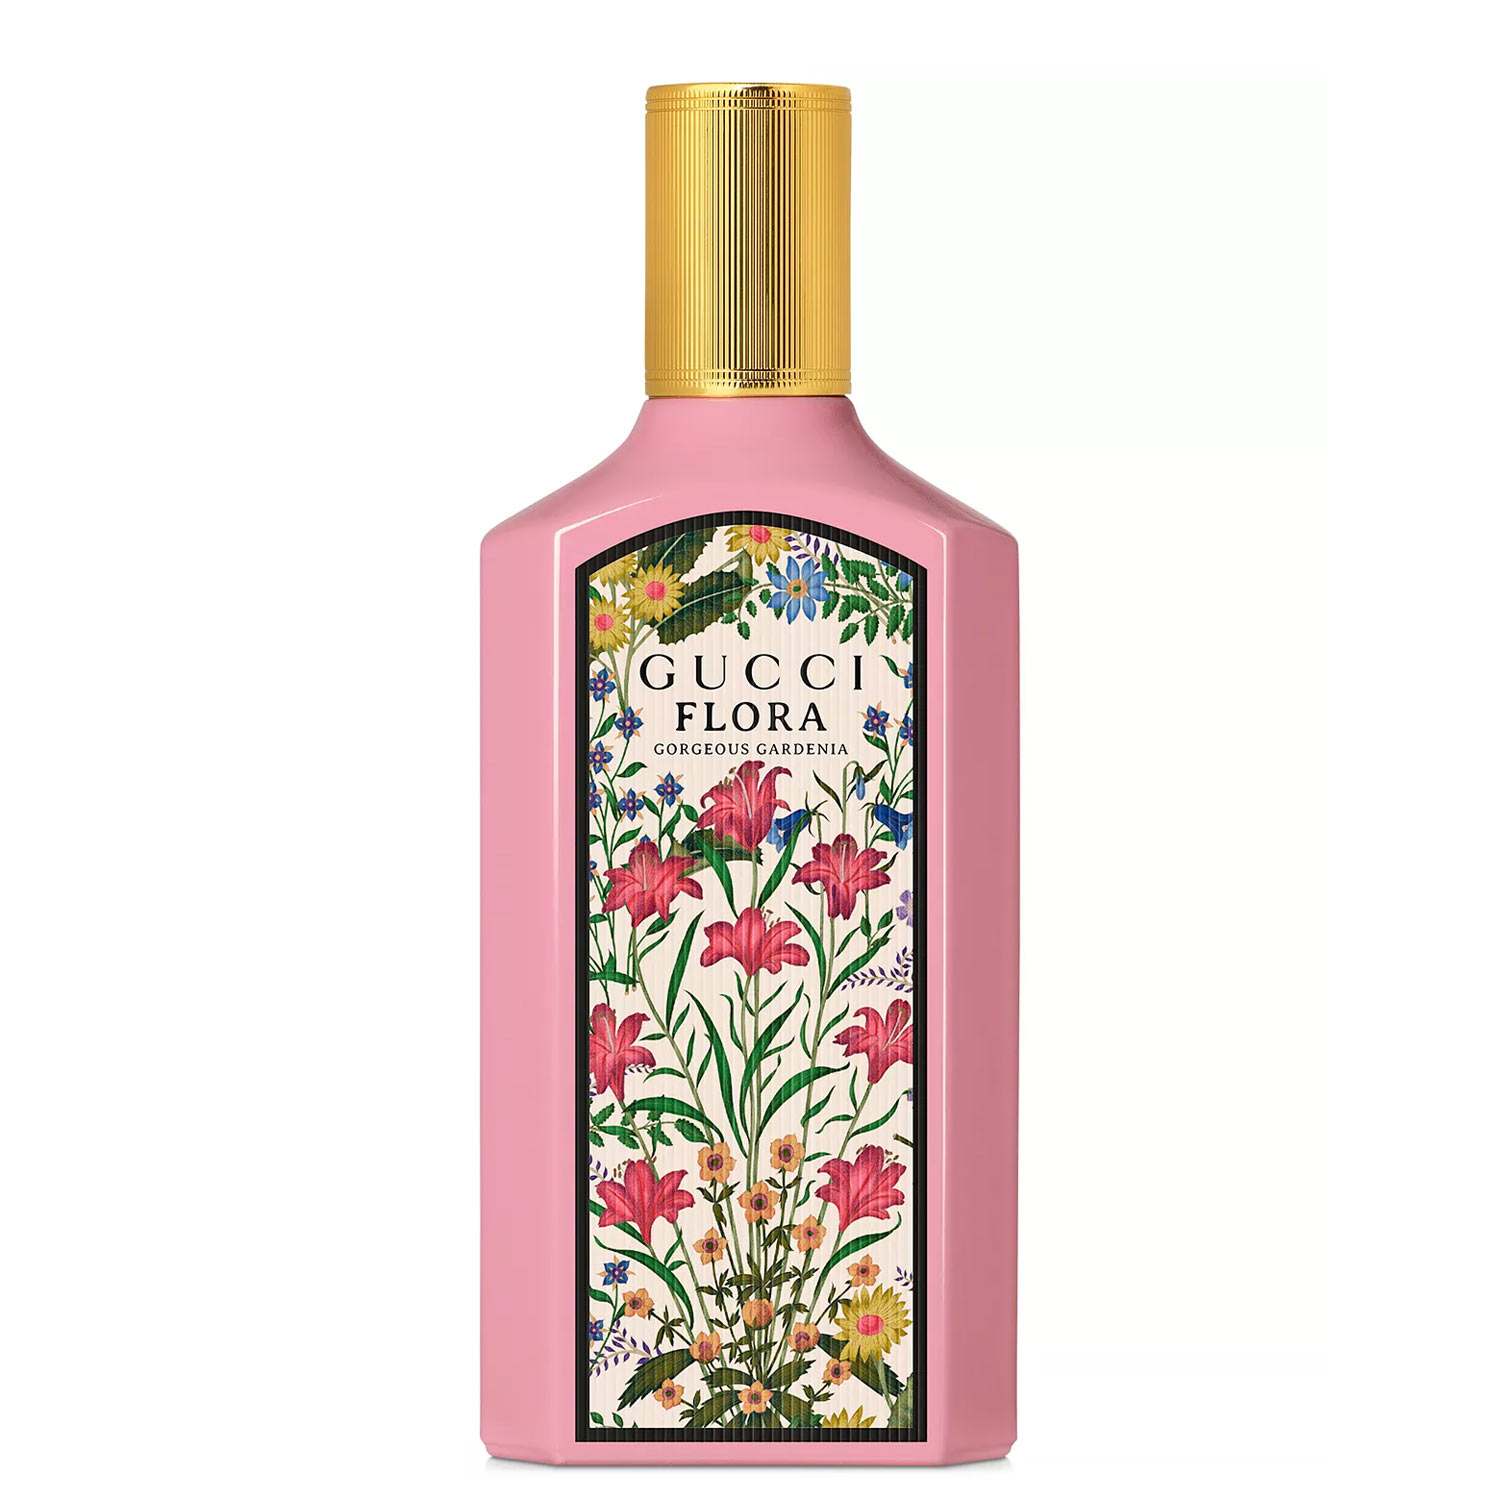 Flora-Gorgeous-Gardenia-Eau-de-Parfum-Gucci